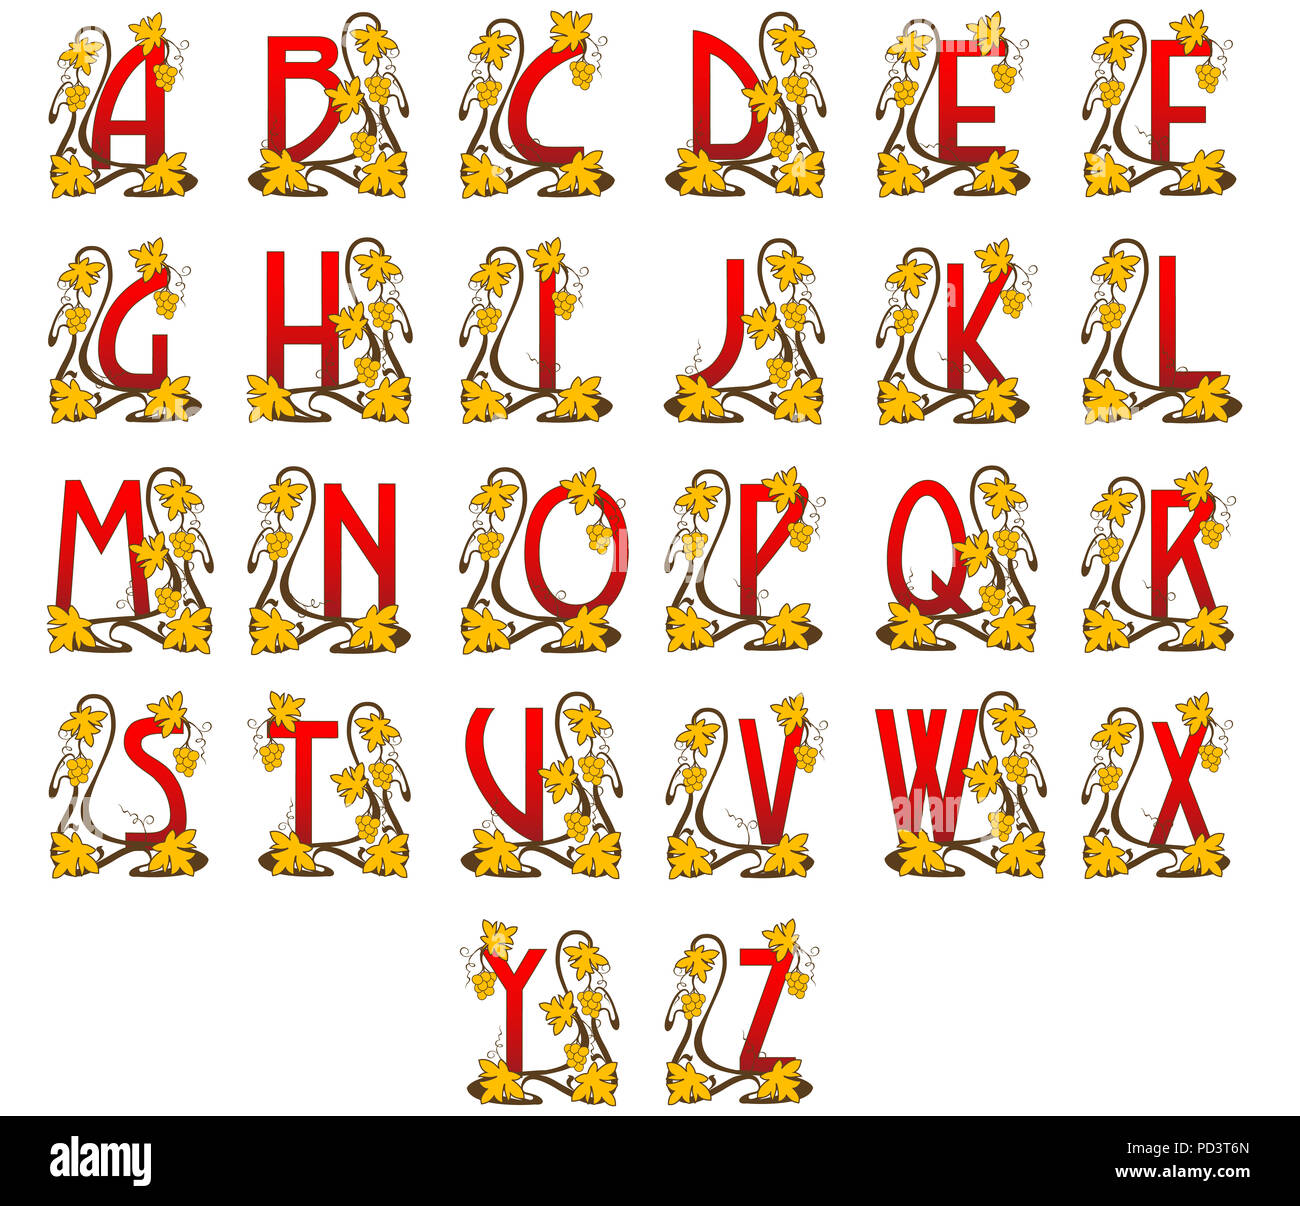 El alfabeto latino en el estilo del art nouveau. Foto de stock